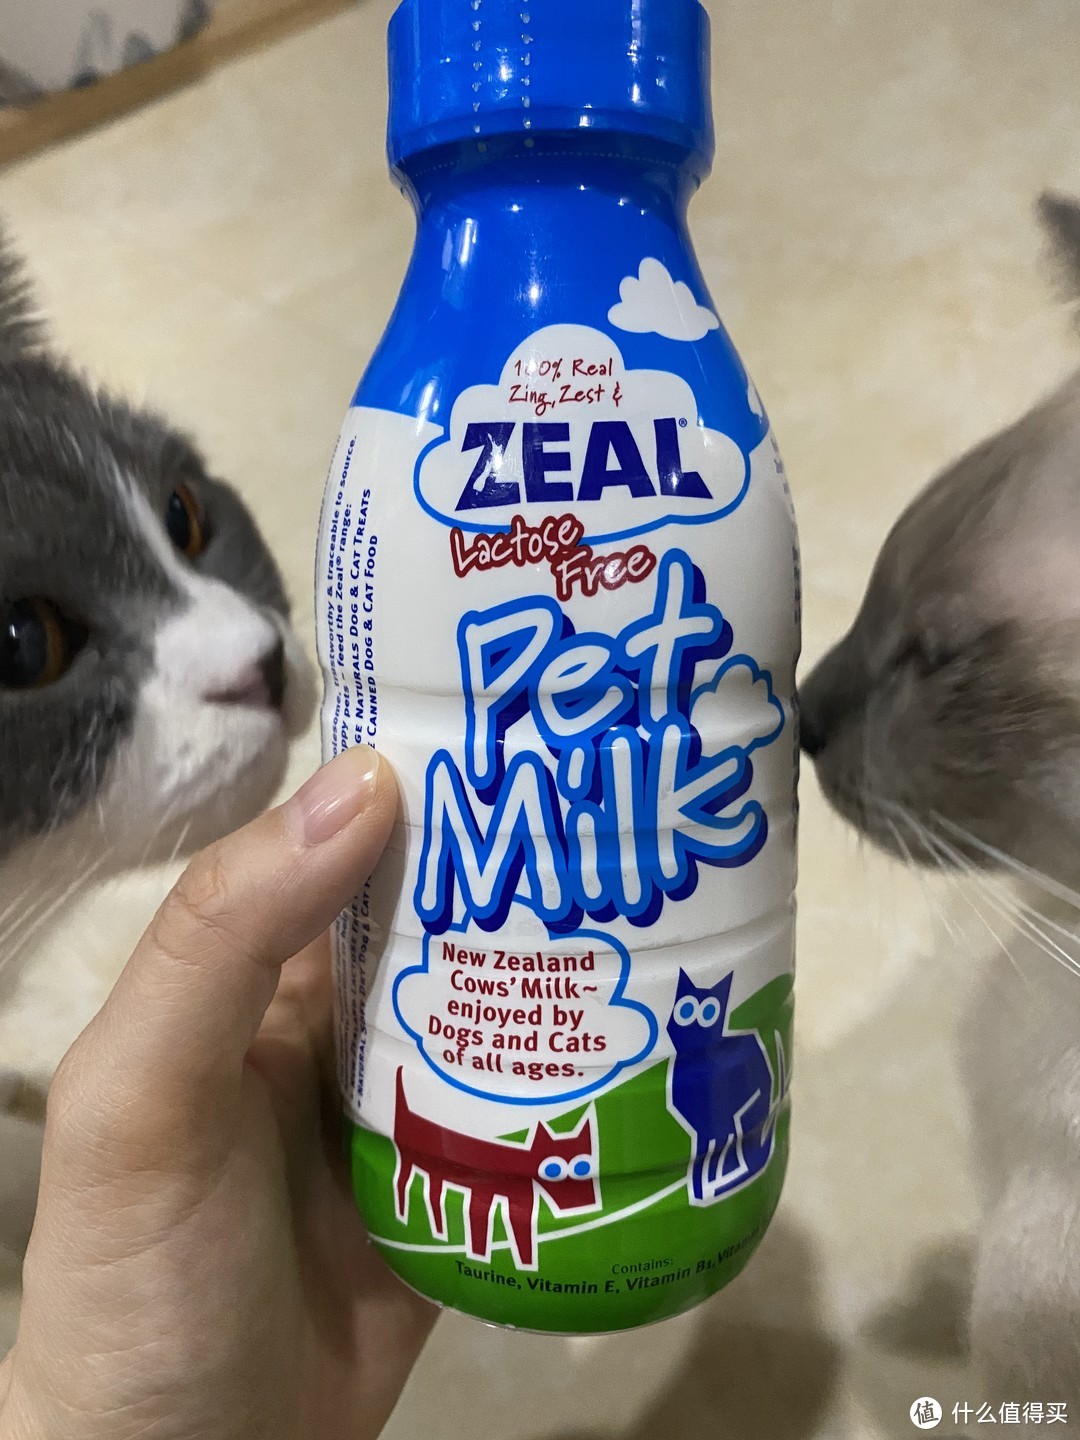 zeal零乳糖犬猫牛奶（切勿给猫狗喂食普通人食牛奶）